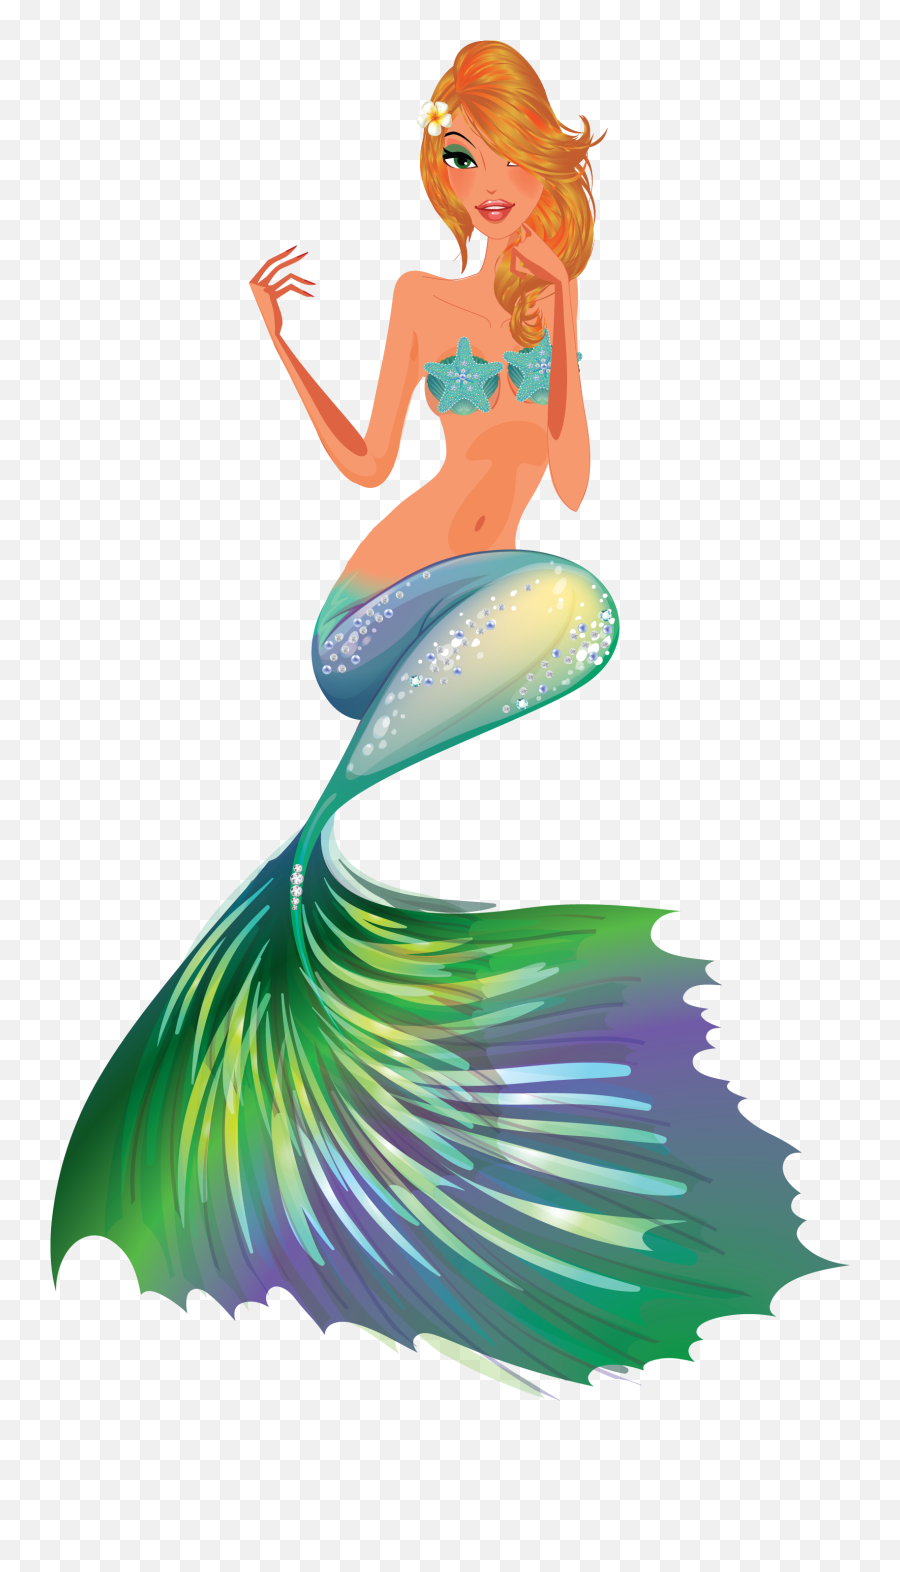 Mermaid Clip Art And Digital Paper Fantasy Mermaid - Fantasy Free Clip Art Mermaid Emoji,Fantasy Clipart